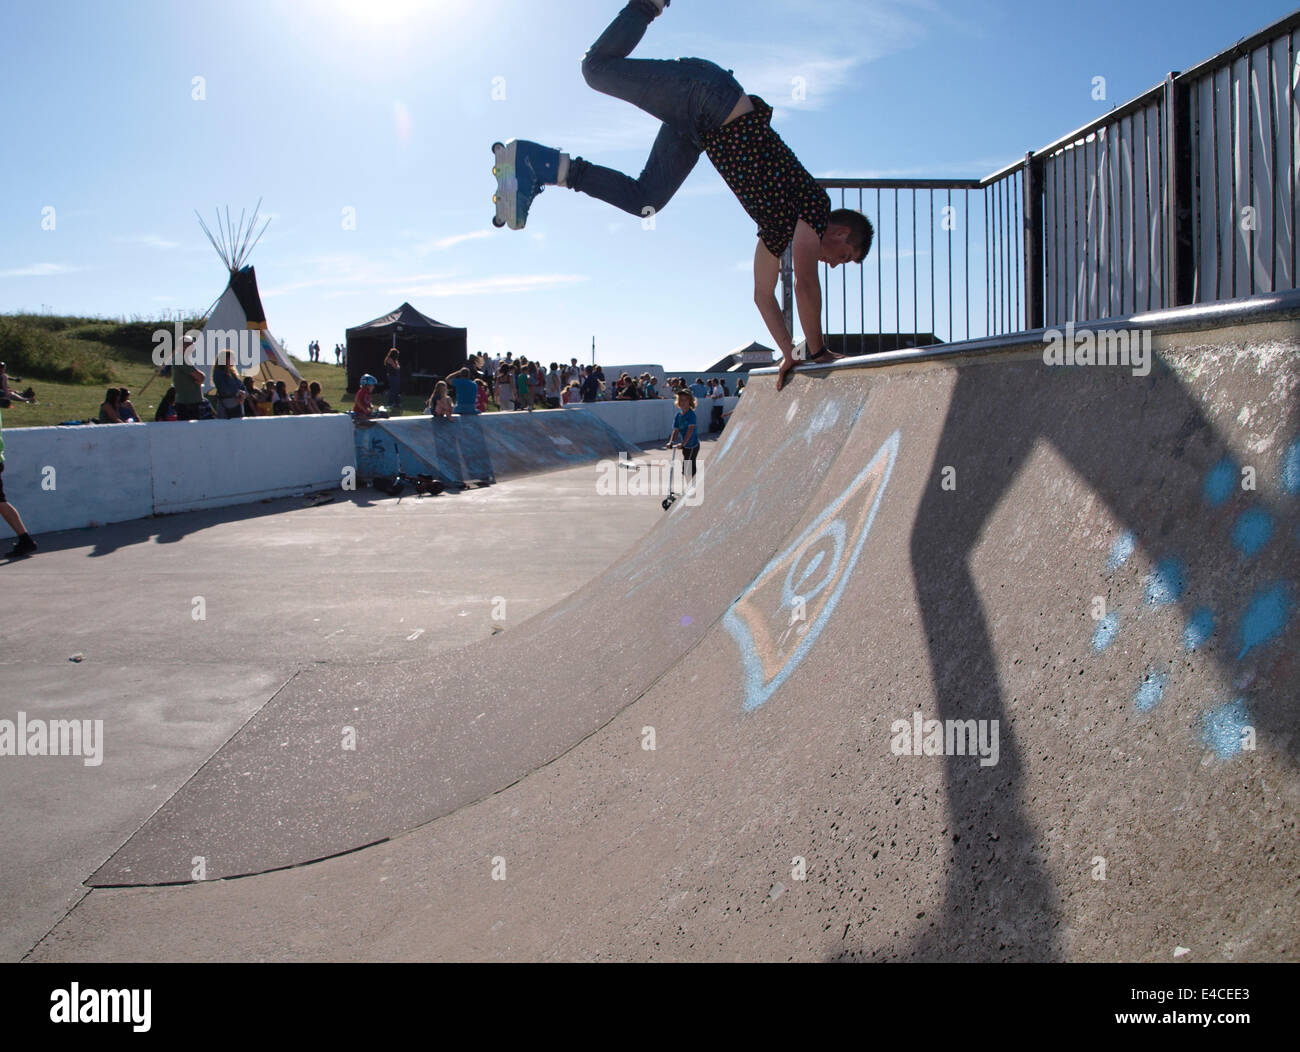 Teenager mit Inline-Skates auf einer Half-Pipe Bude Skatepark, Cornwall, UK  Stockfotografie - Alamy